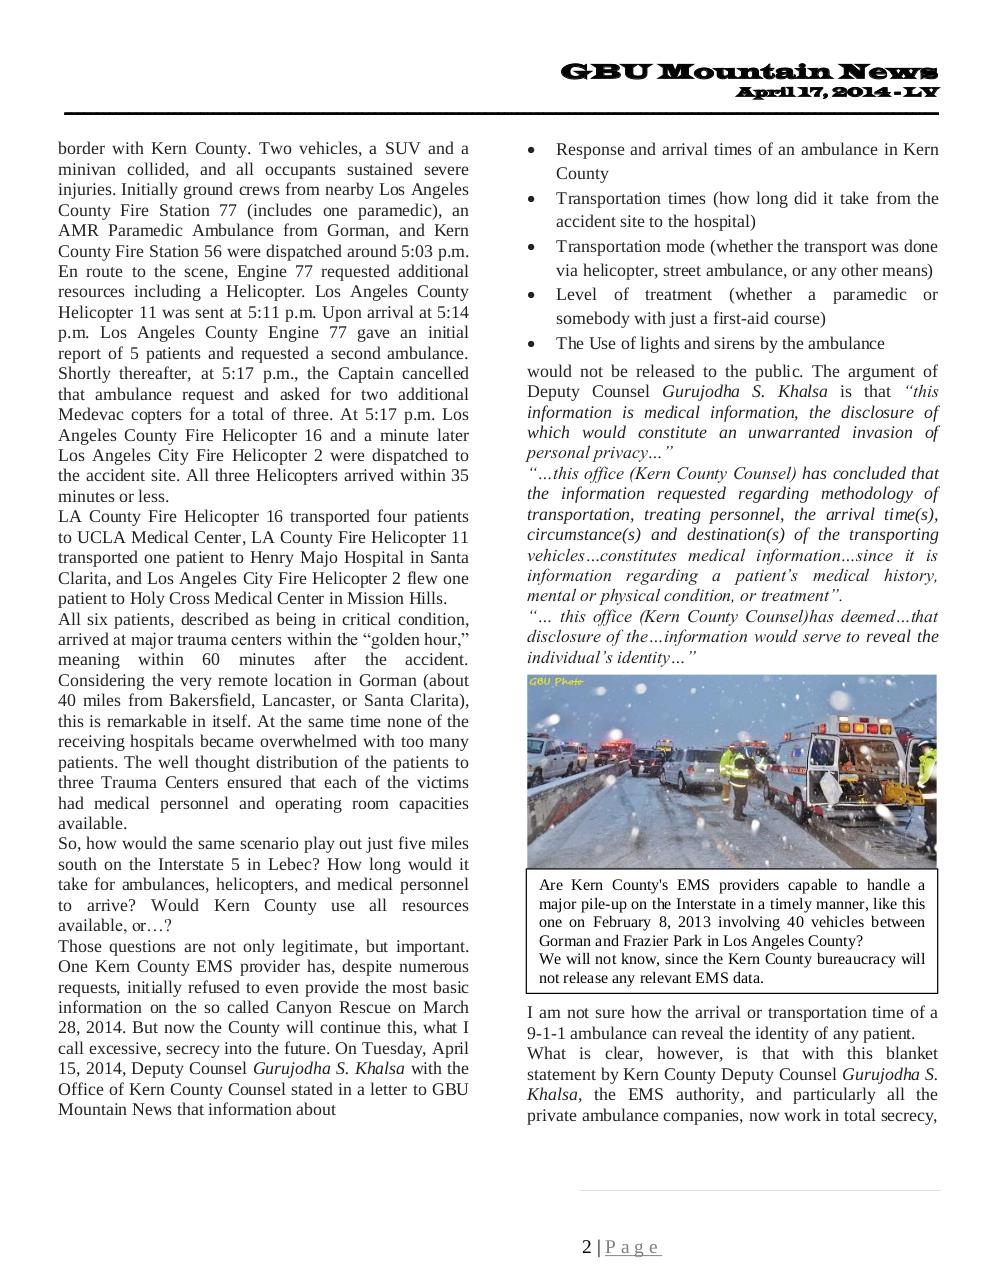 GBU Mountain News LV - April 17, 2014.pdf - page 2/34